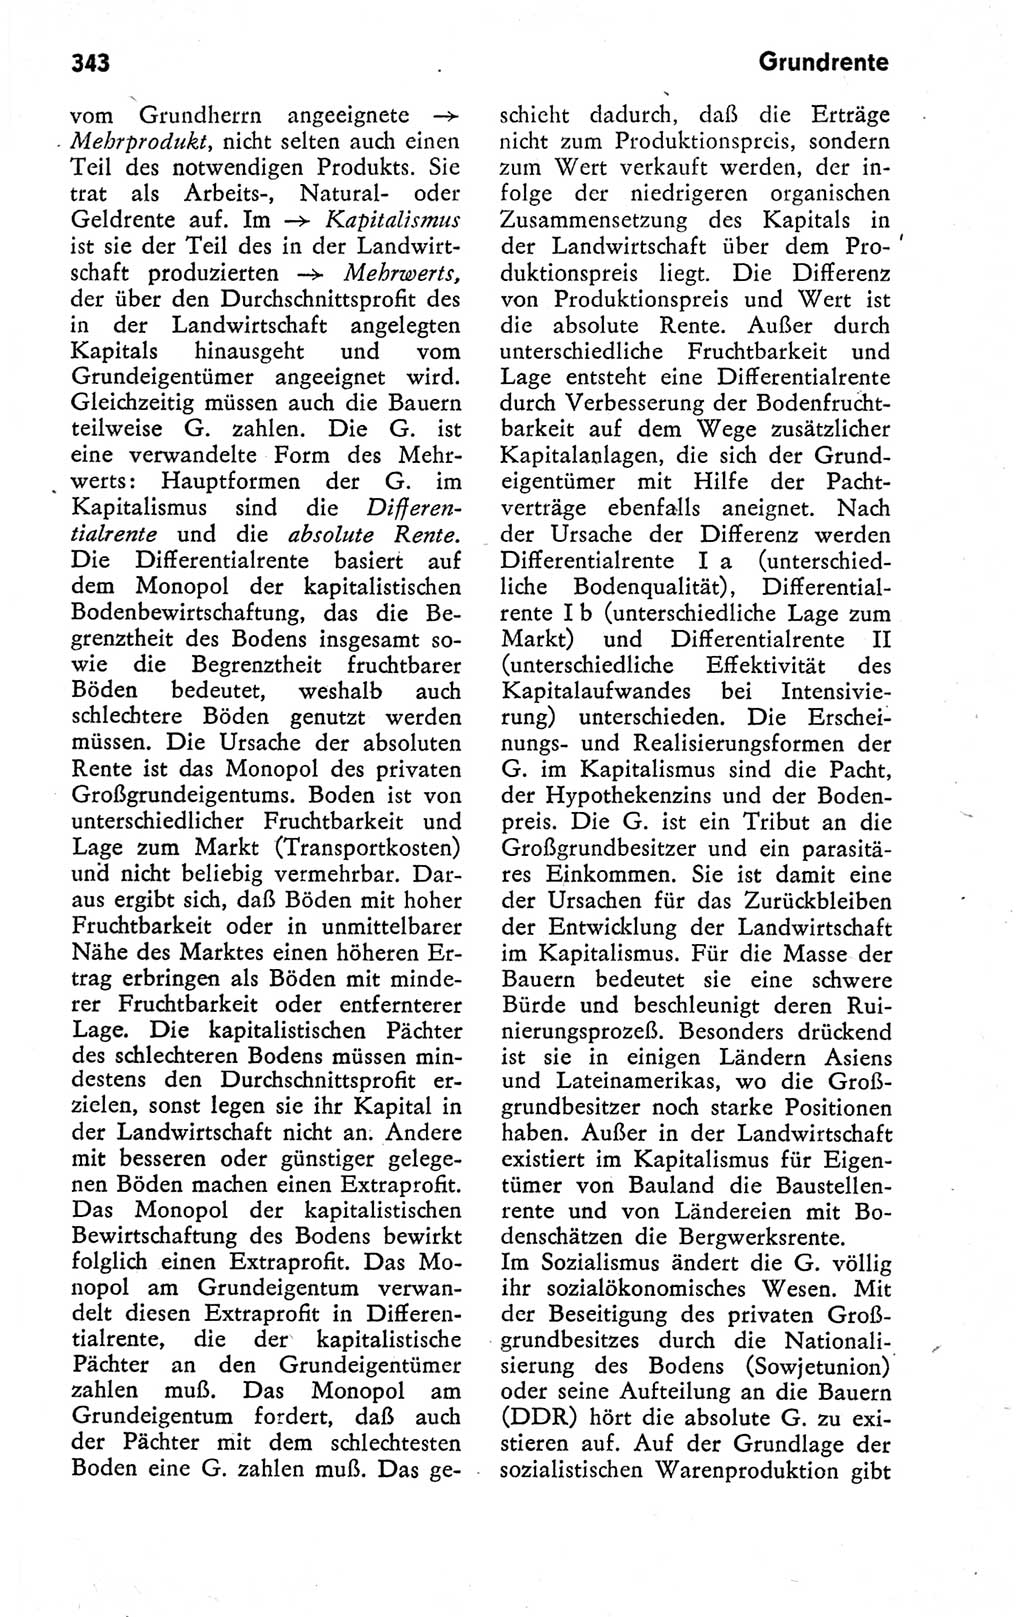 Kleines politisches Wörterbuch [Deutsche Demokratische Republik (DDR)] 1978, Seite 343 (Kl. pol. Wb. DDR 1978, S. 343)